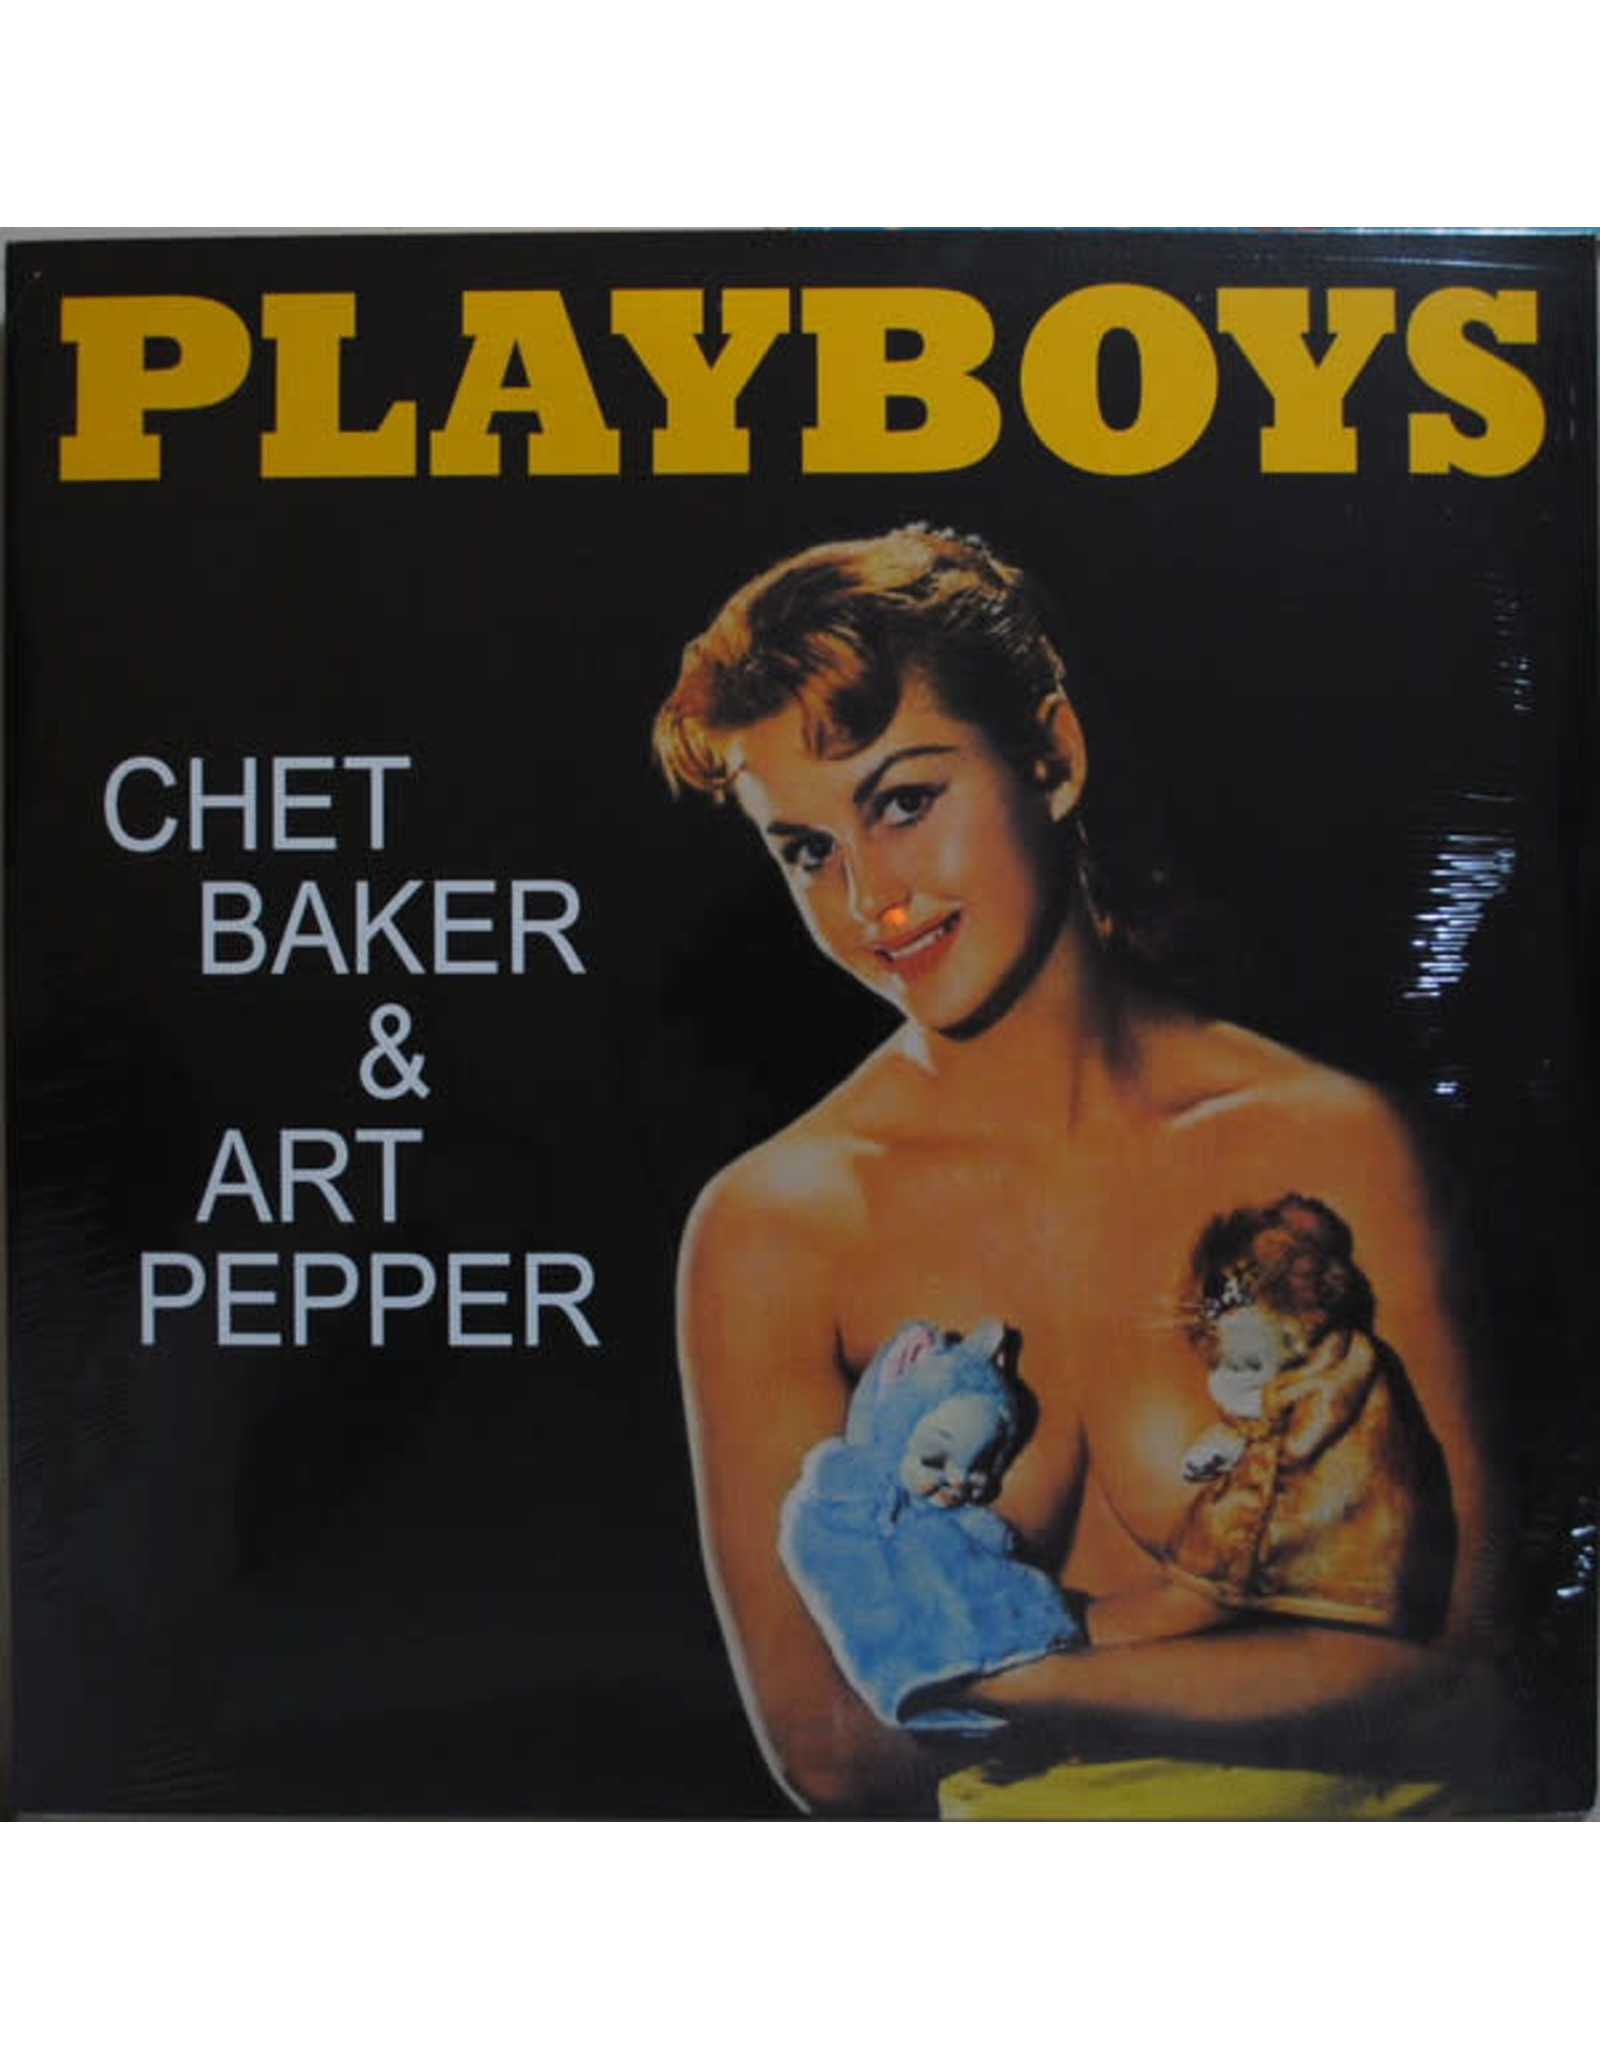 Baker, Chet - Pepper, Art / Playboys